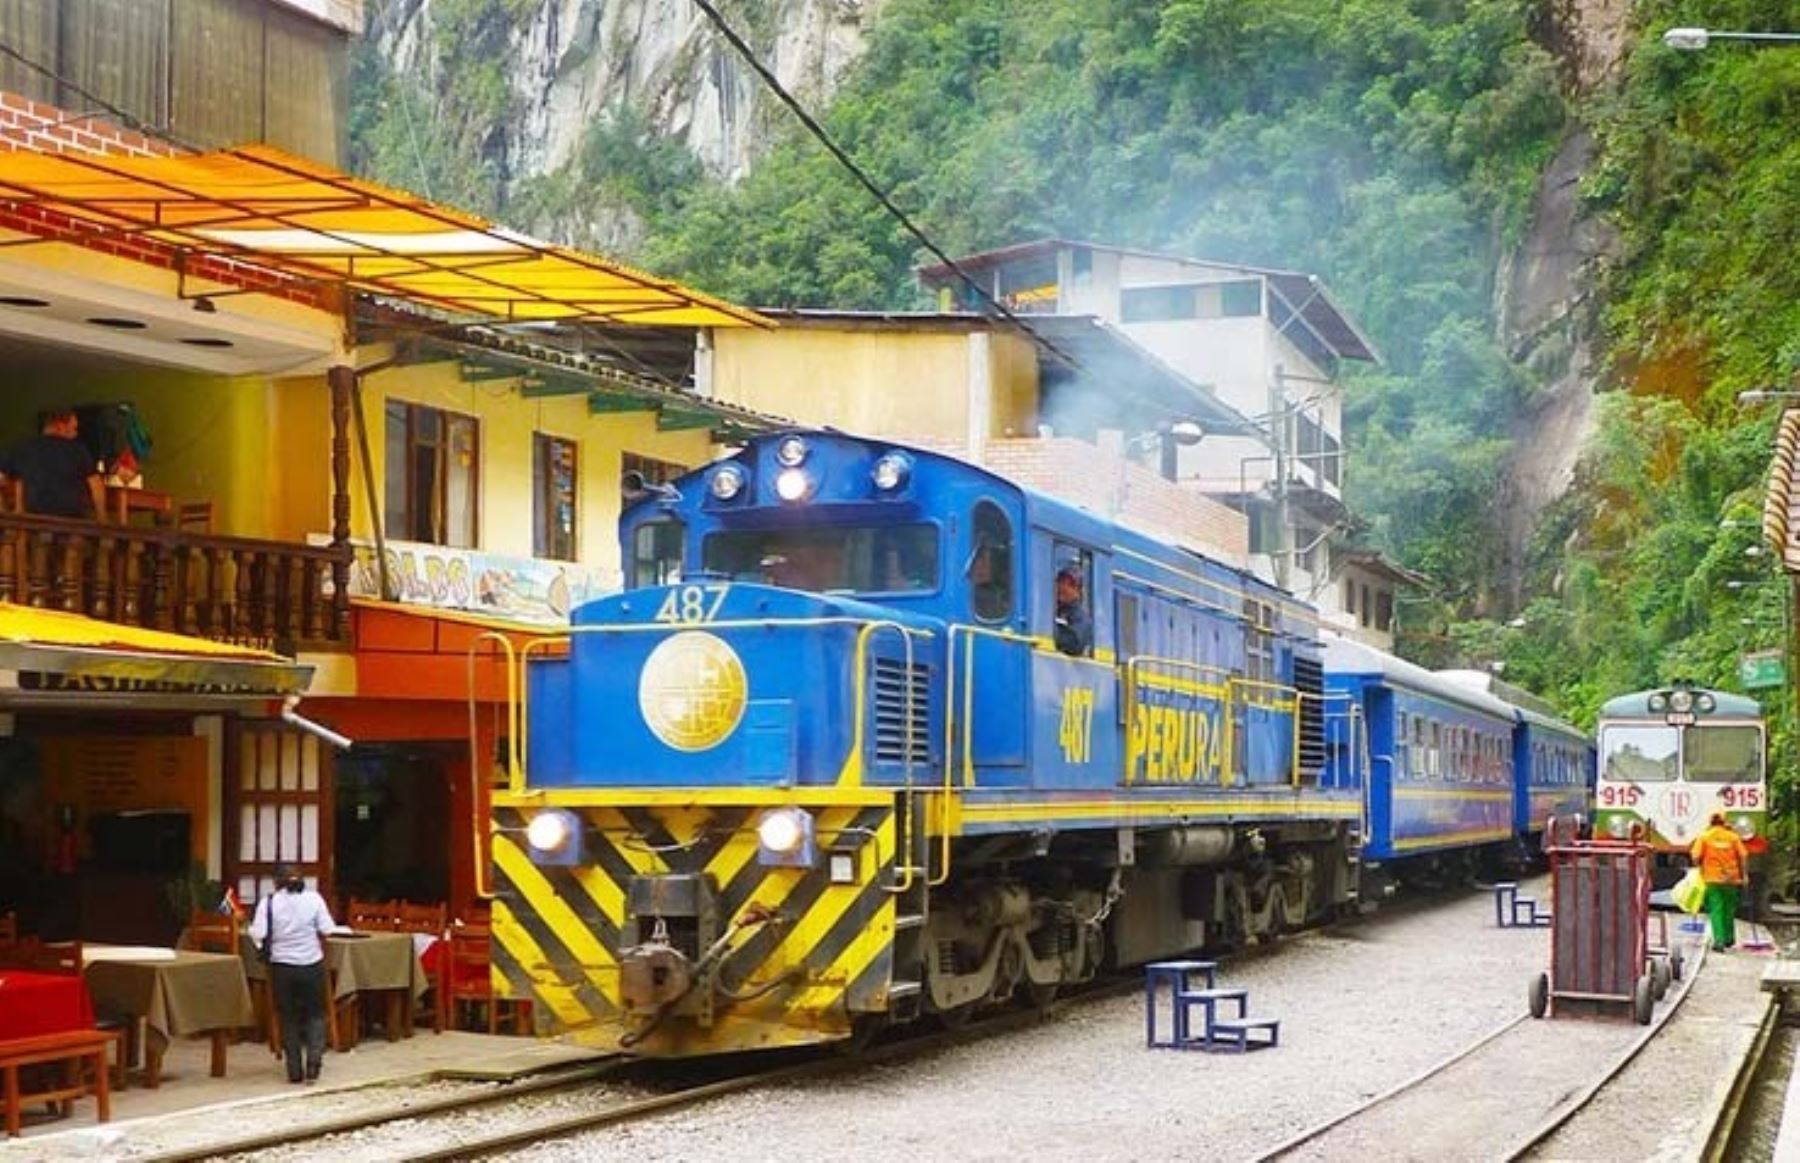 La operadora PeruRail anunció el reinicio de operaciones turísticas del tren a Machu Picchu a partir del 1 de noviembre. ANDINA/Difusión